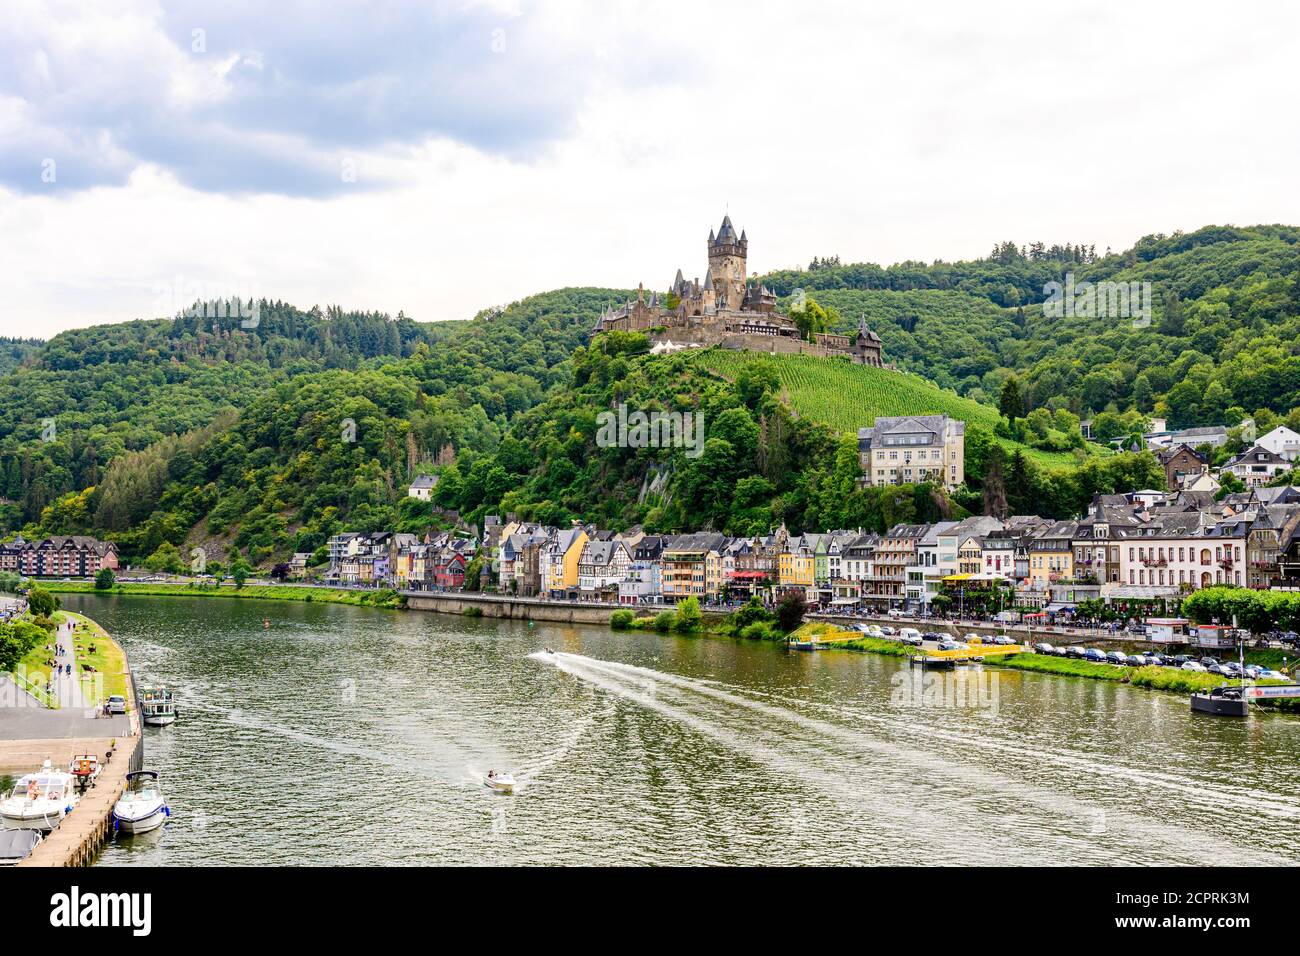 Cochem. Belle ville historique sur la romantique Moselle, la Moselle. Vue sur la ville avec le château de Reichsburg sur une colline. Rhénanie-Palatinat, Allemagne, Banque D'Images